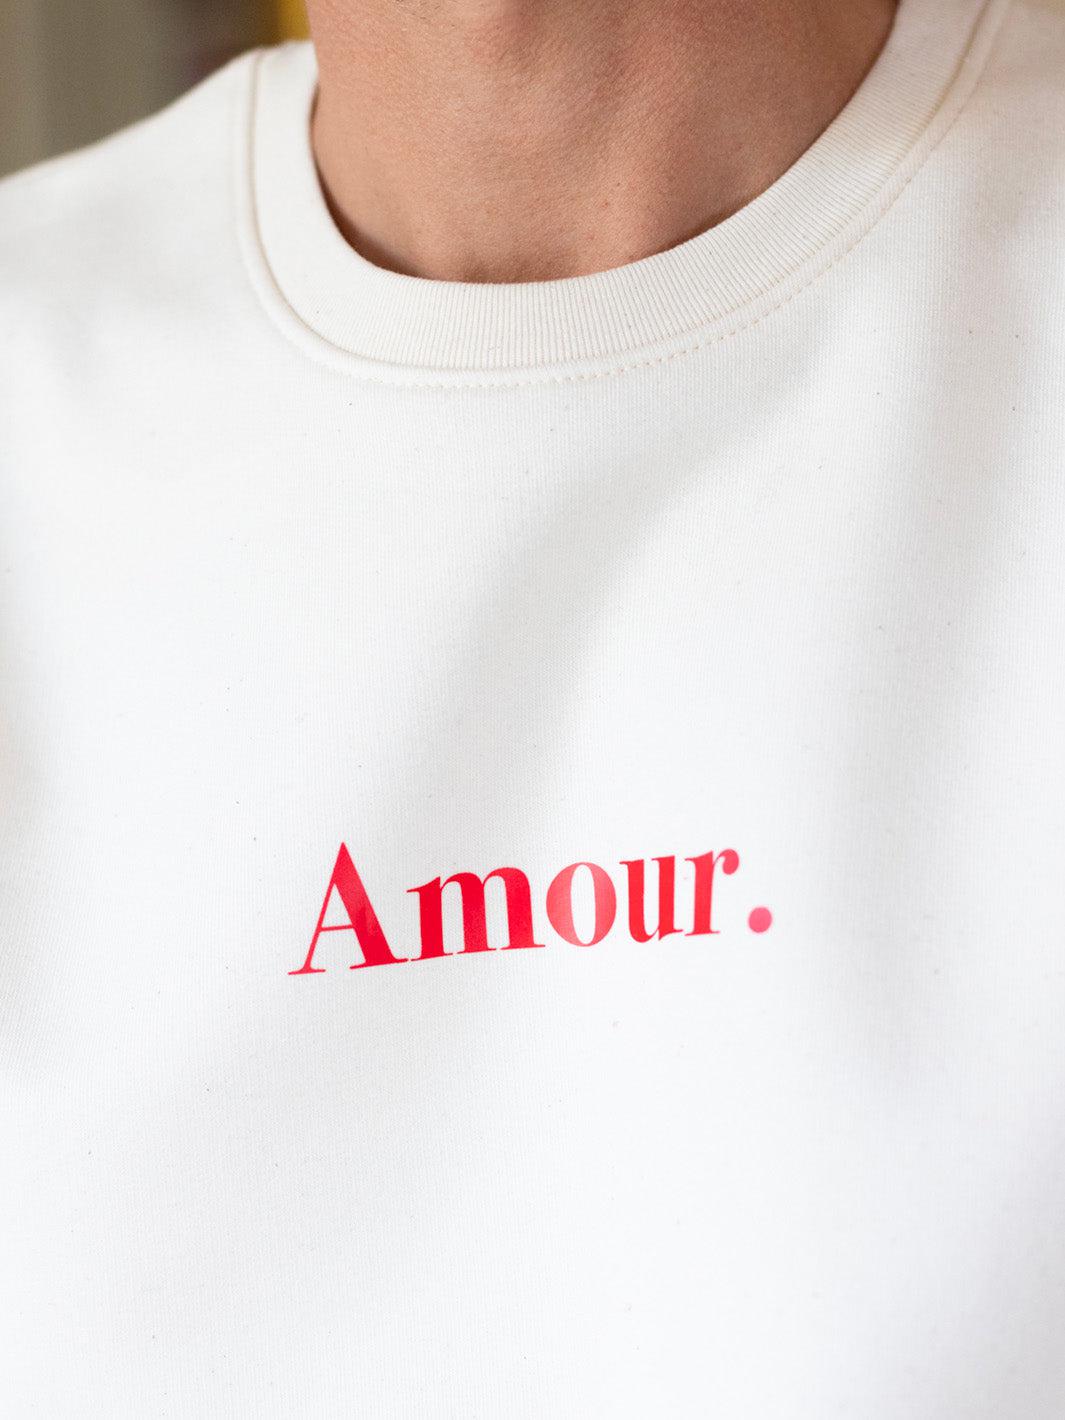 Le Classique "Amour." crème imprimé rouge-Rufus Paris